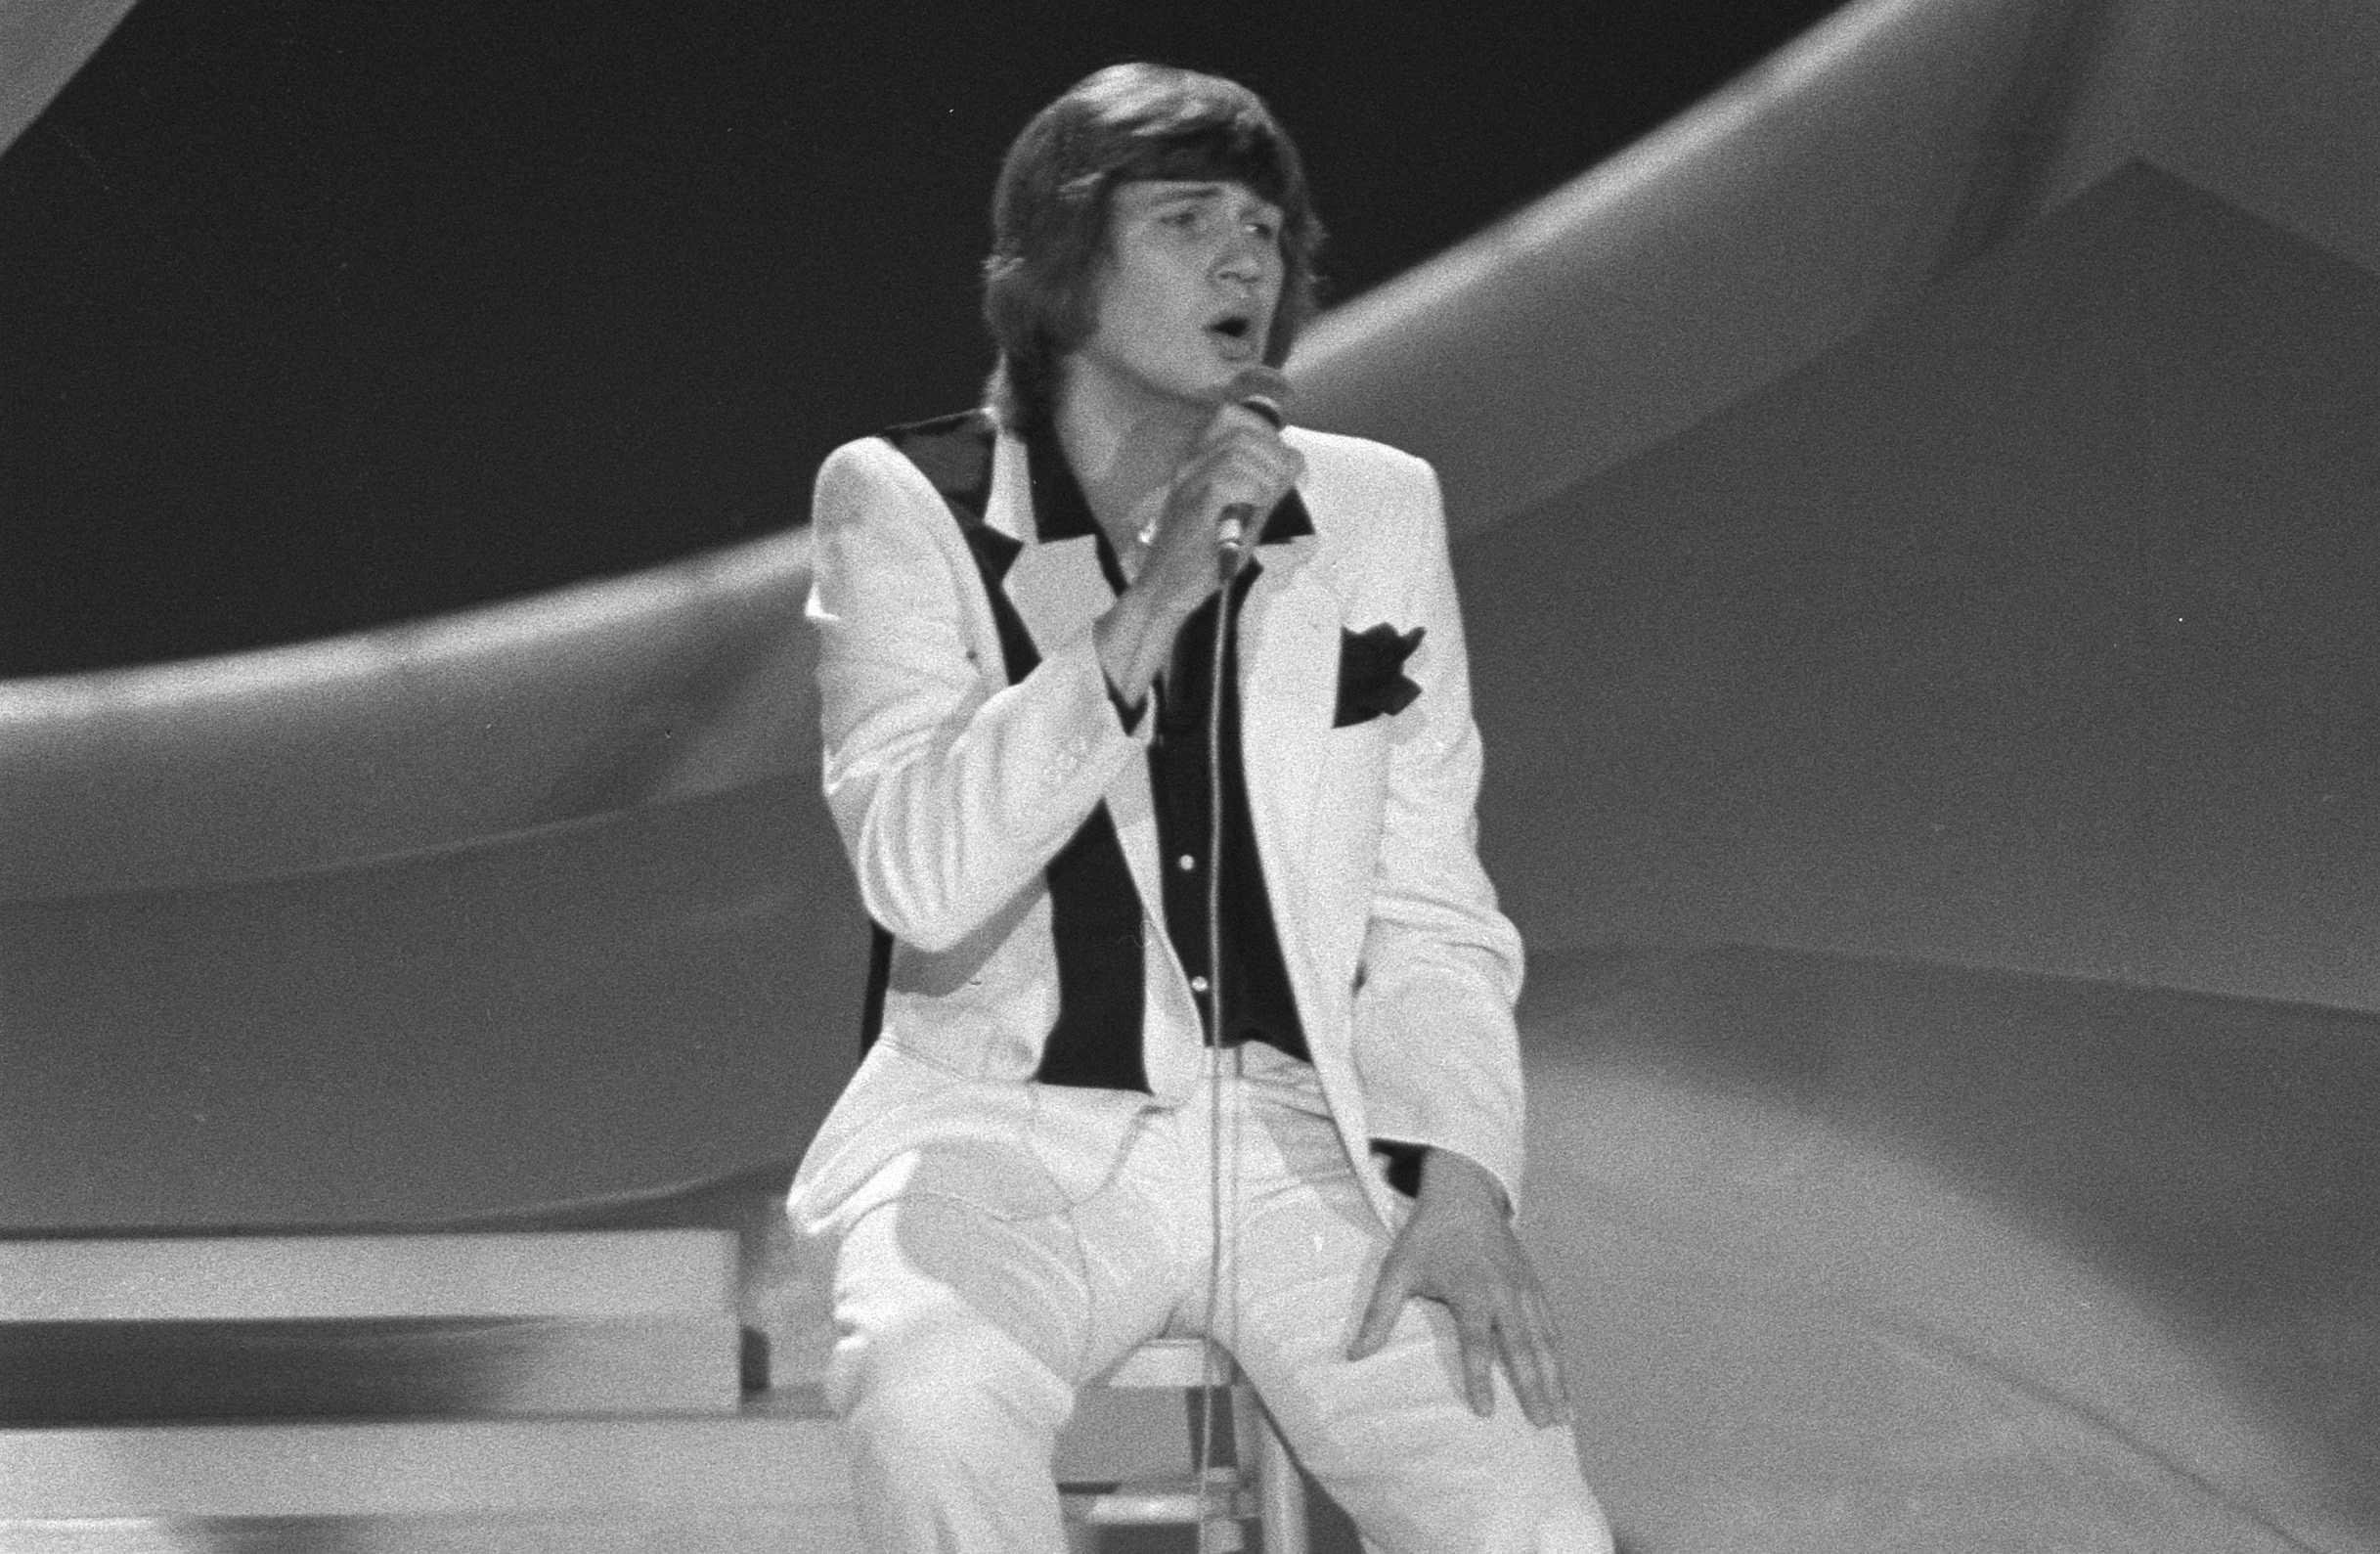 El cantante Johnny Logan, en su actuación en Eurovisión en 1980.